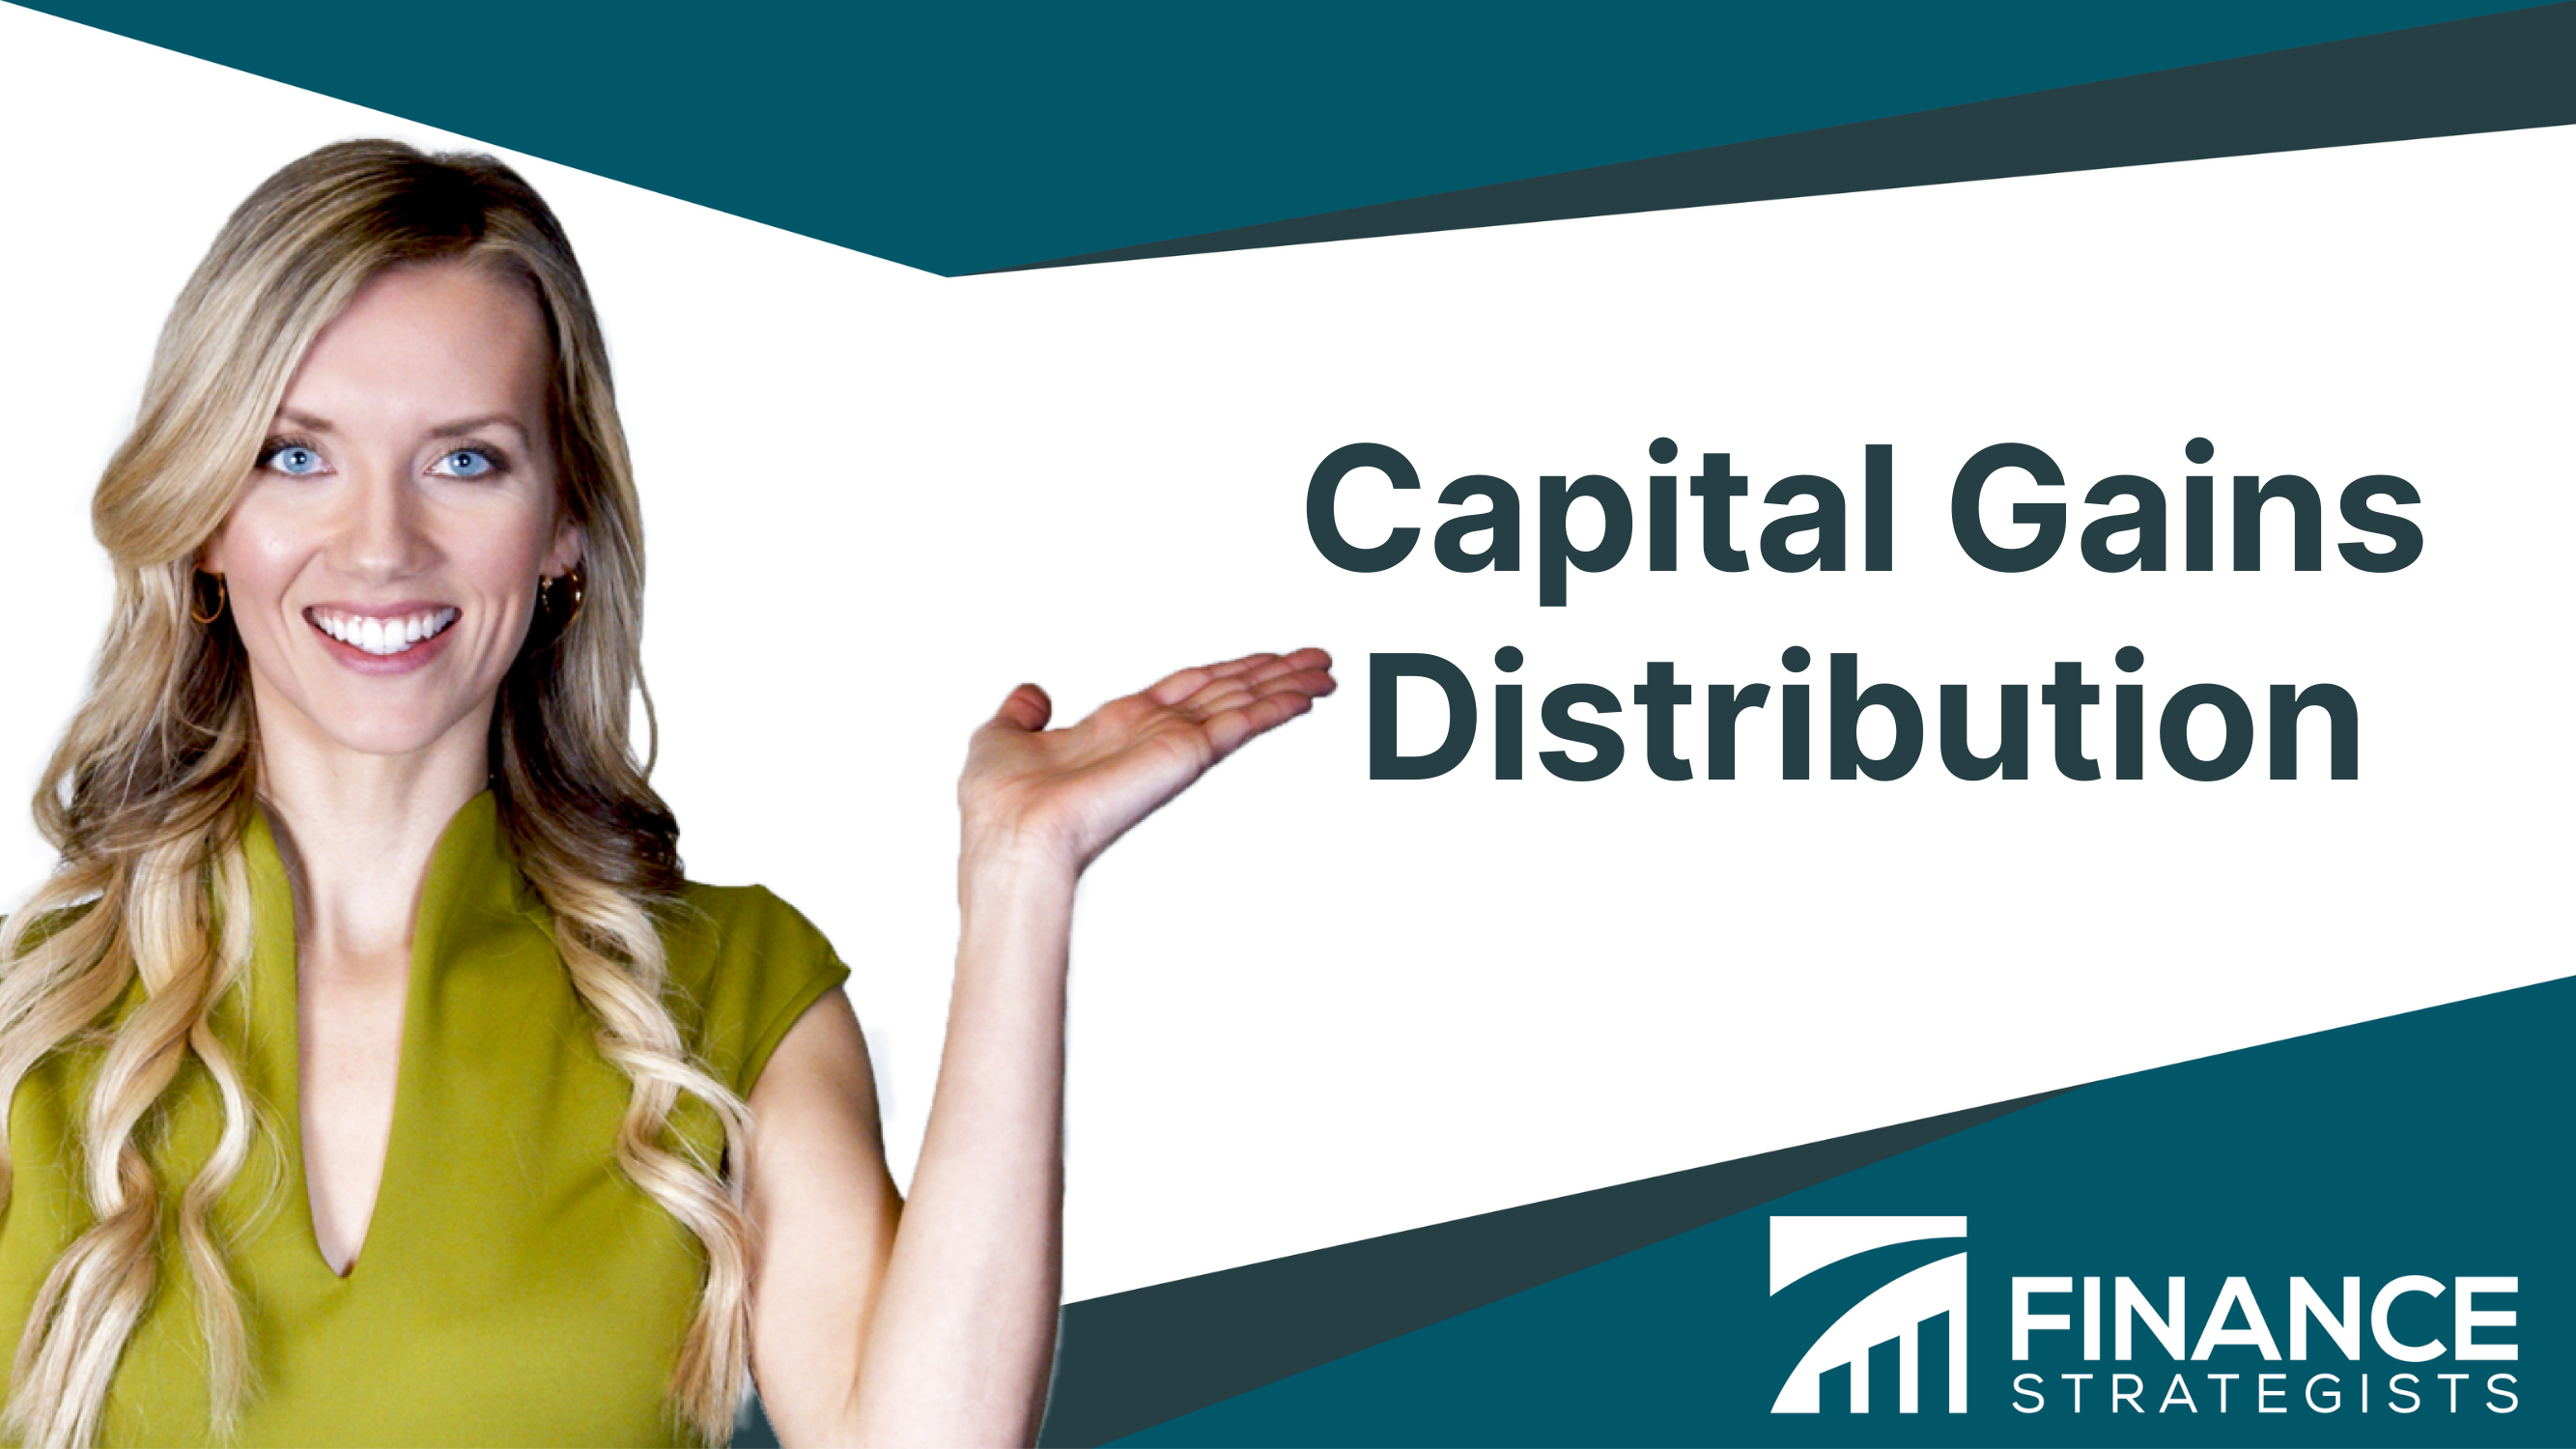 Capital Gains Distribution Definition, Types, Process, & Factors